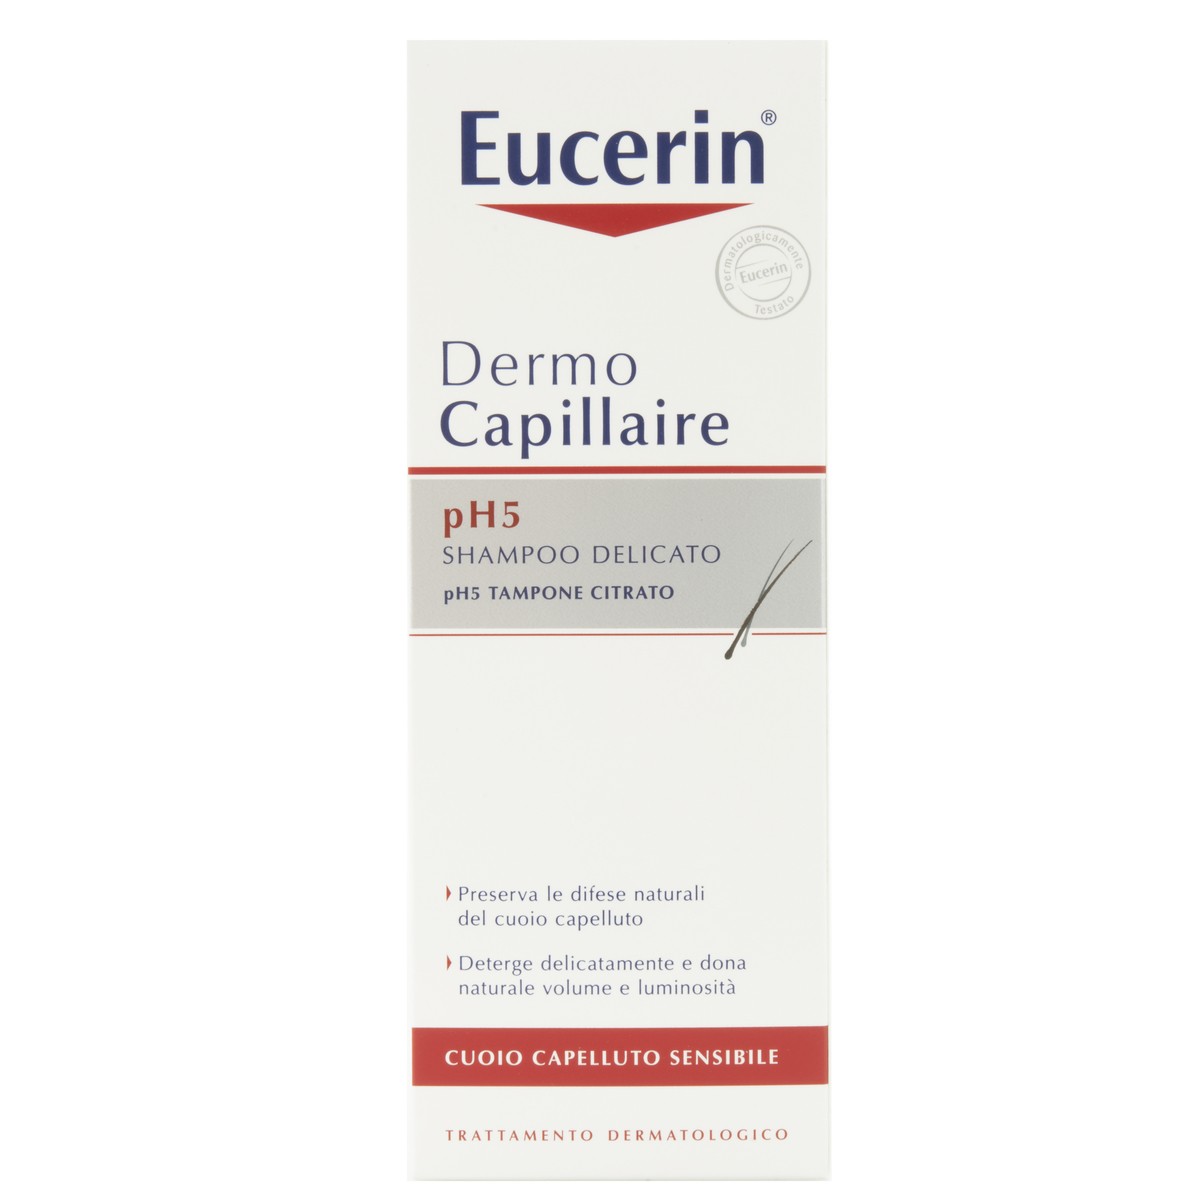 Eucerin Shampoo delicato pH5 Dermo Capillaire